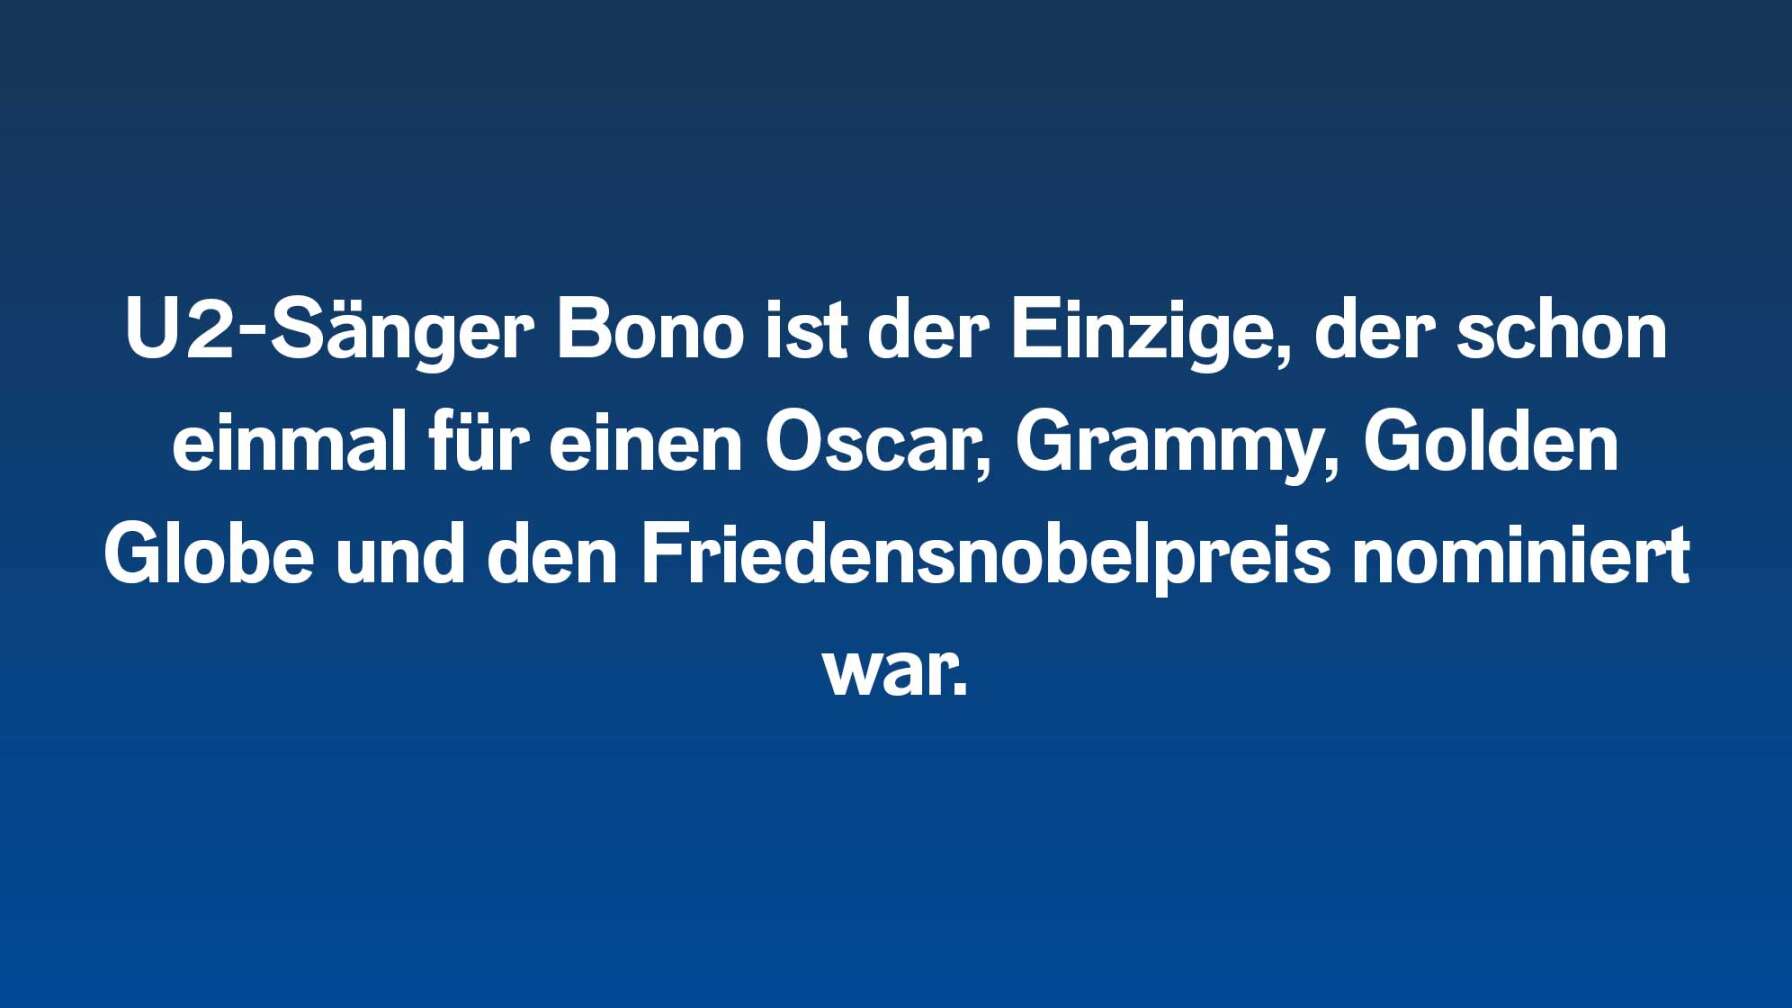 U2-Sänger Bono ist der Einzige, der schon einmal für einen Oscar, Grammy, Golden Globe und den Friedensnobelpreis nominiert war.